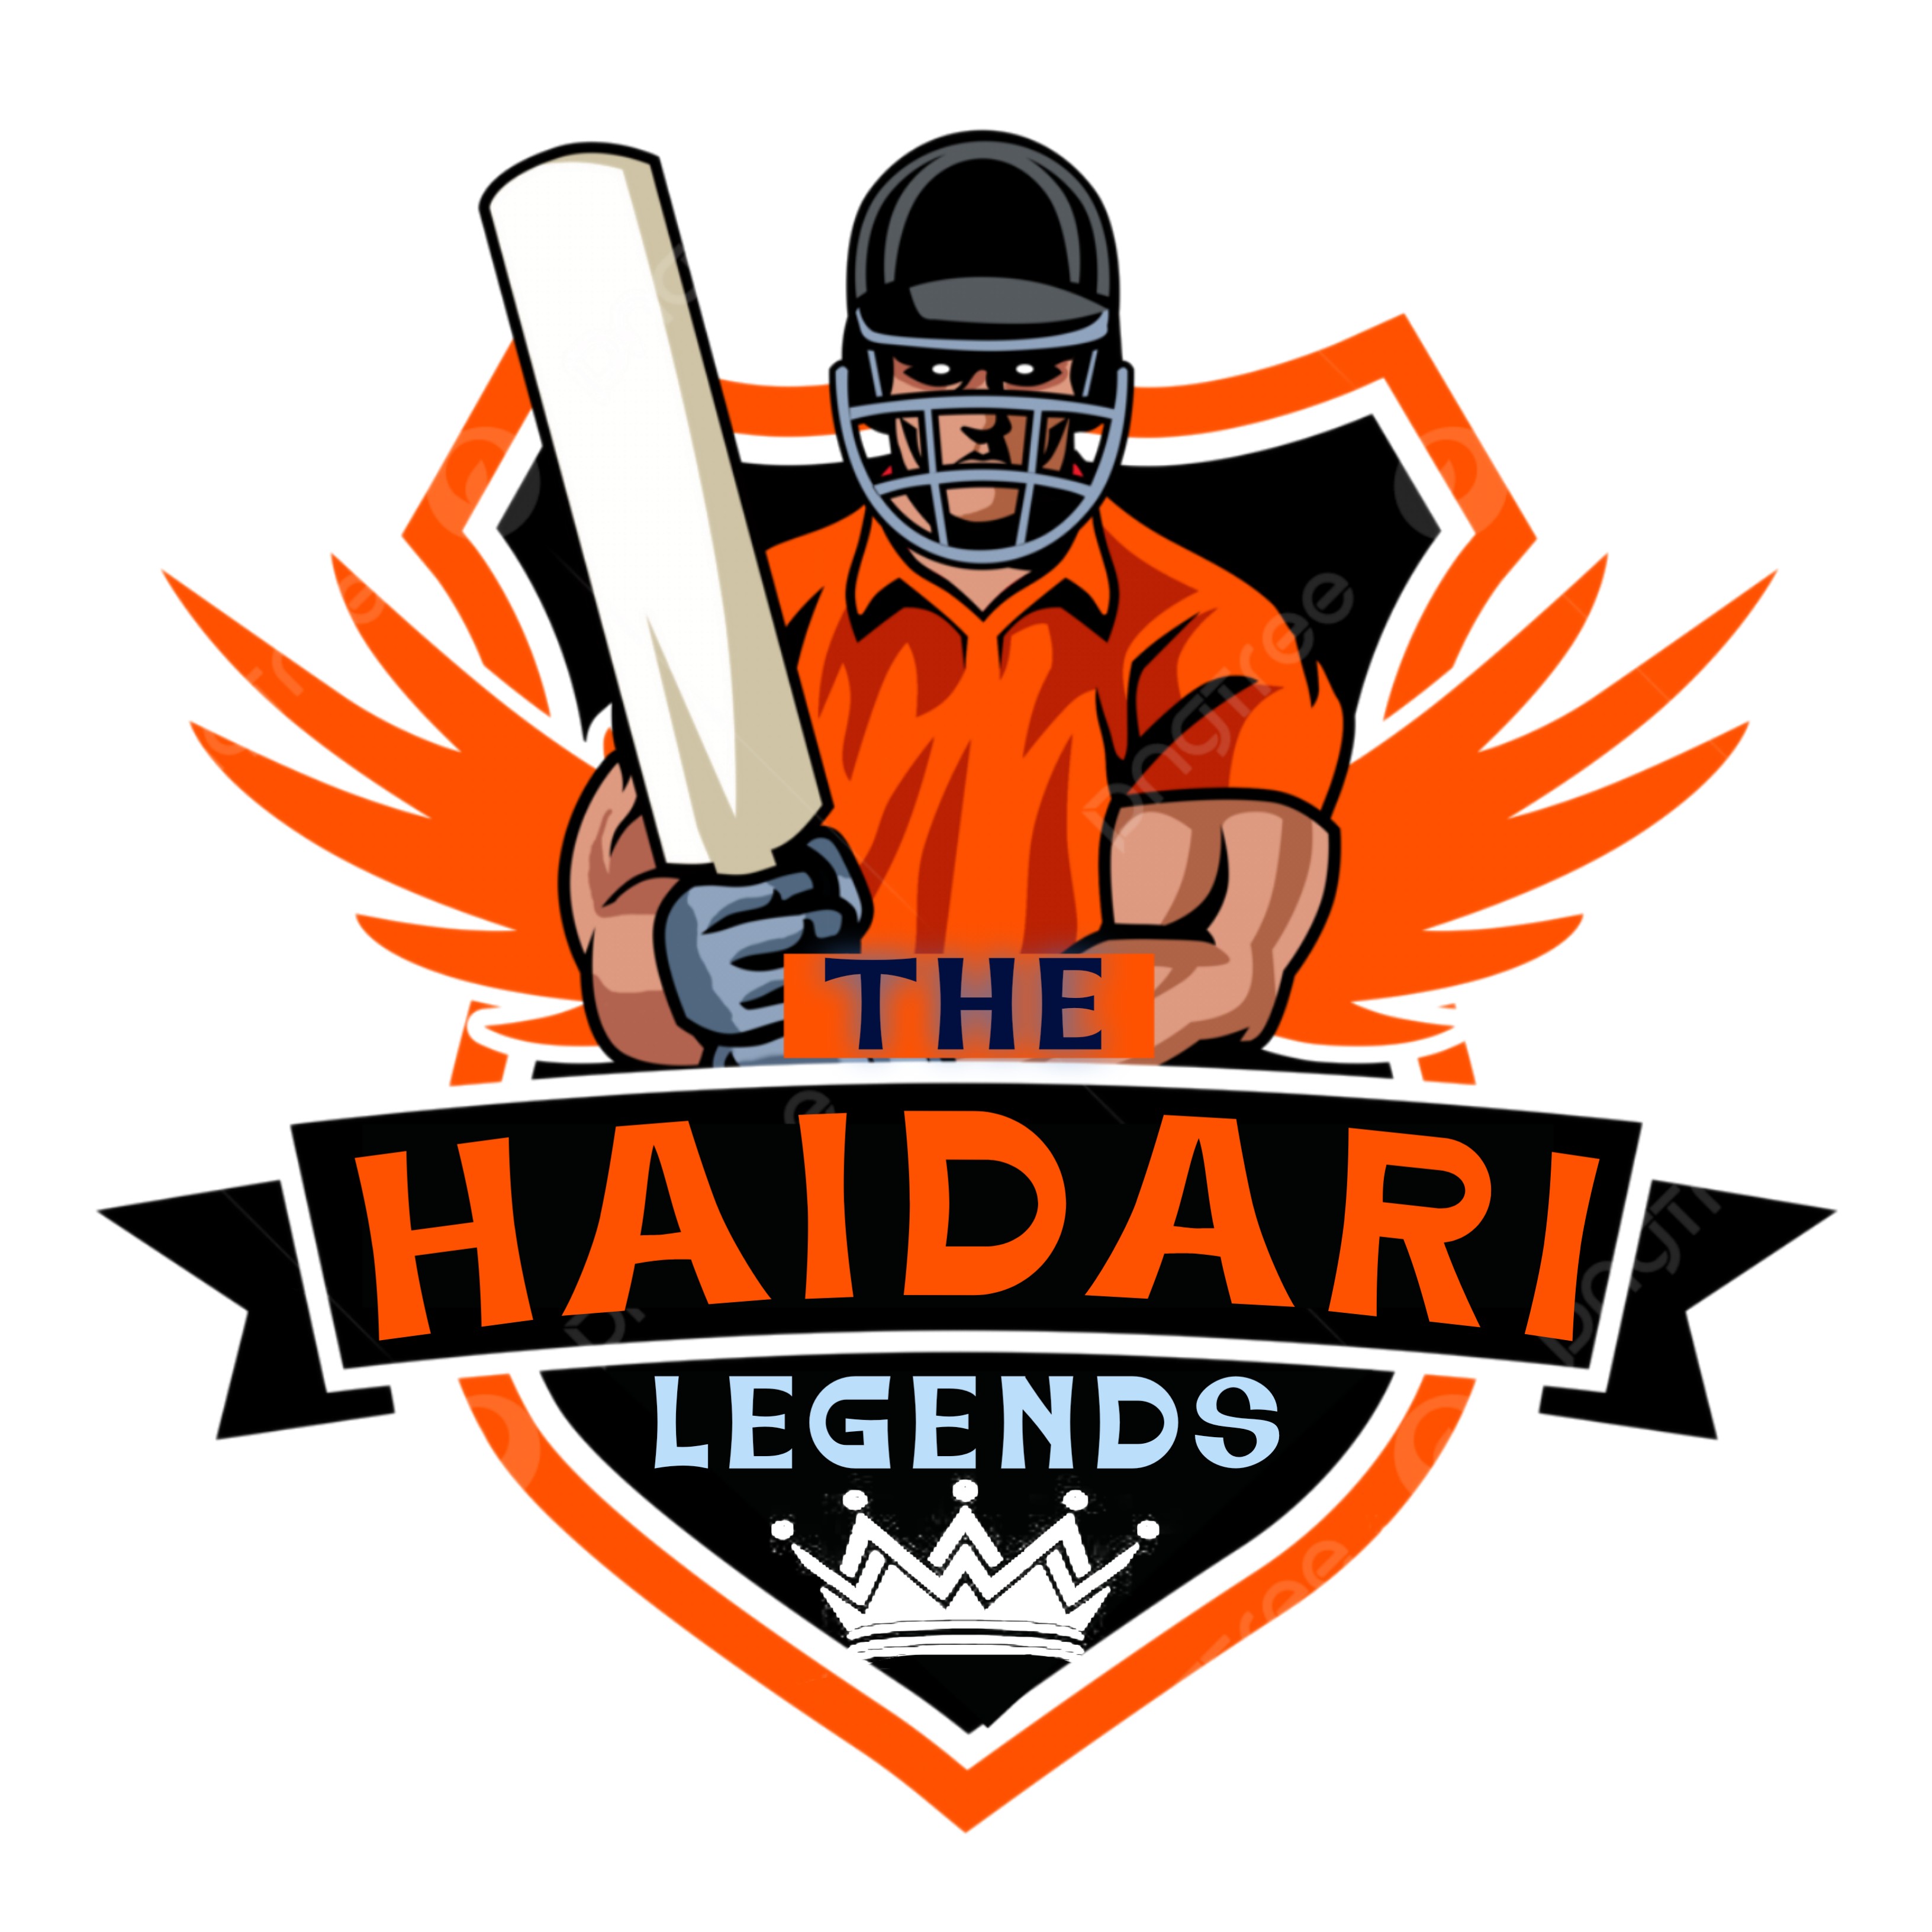 Haideri Legends